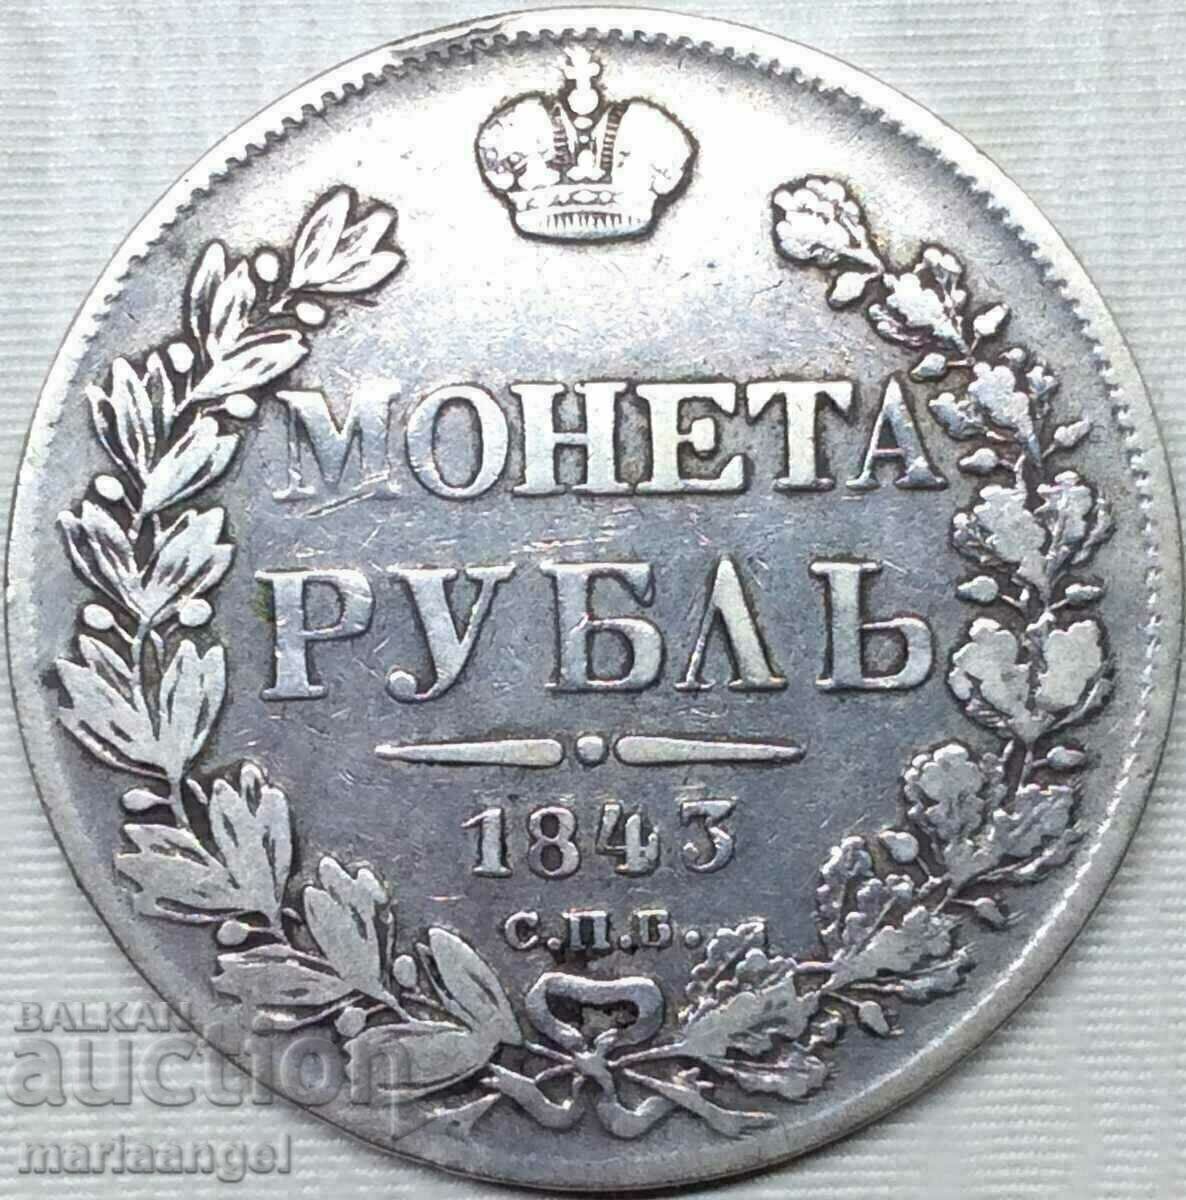 1 ruble 1843 Russia Nicholas I 20.35g silver